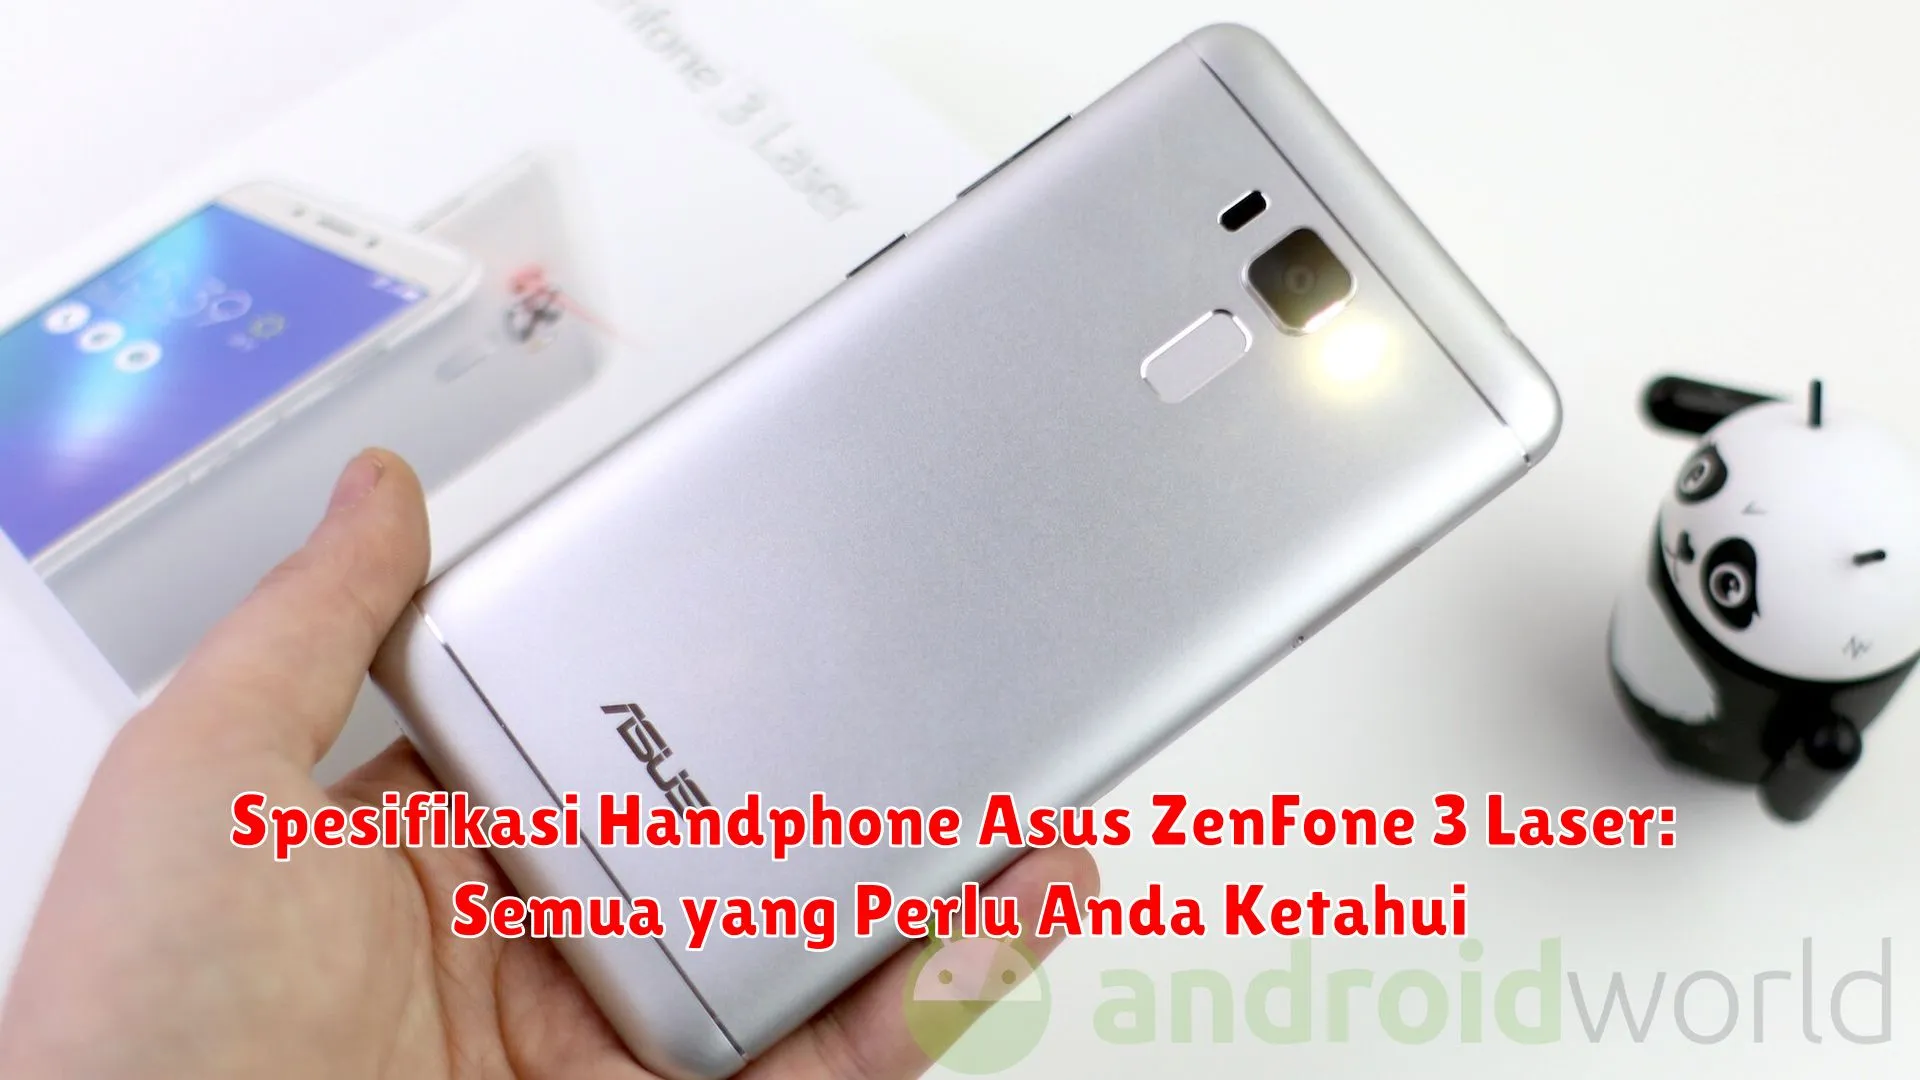 Spesifikasi Handphone Asus ZenFone 3 Laser: Semua yang Perlu Anda Ketahui